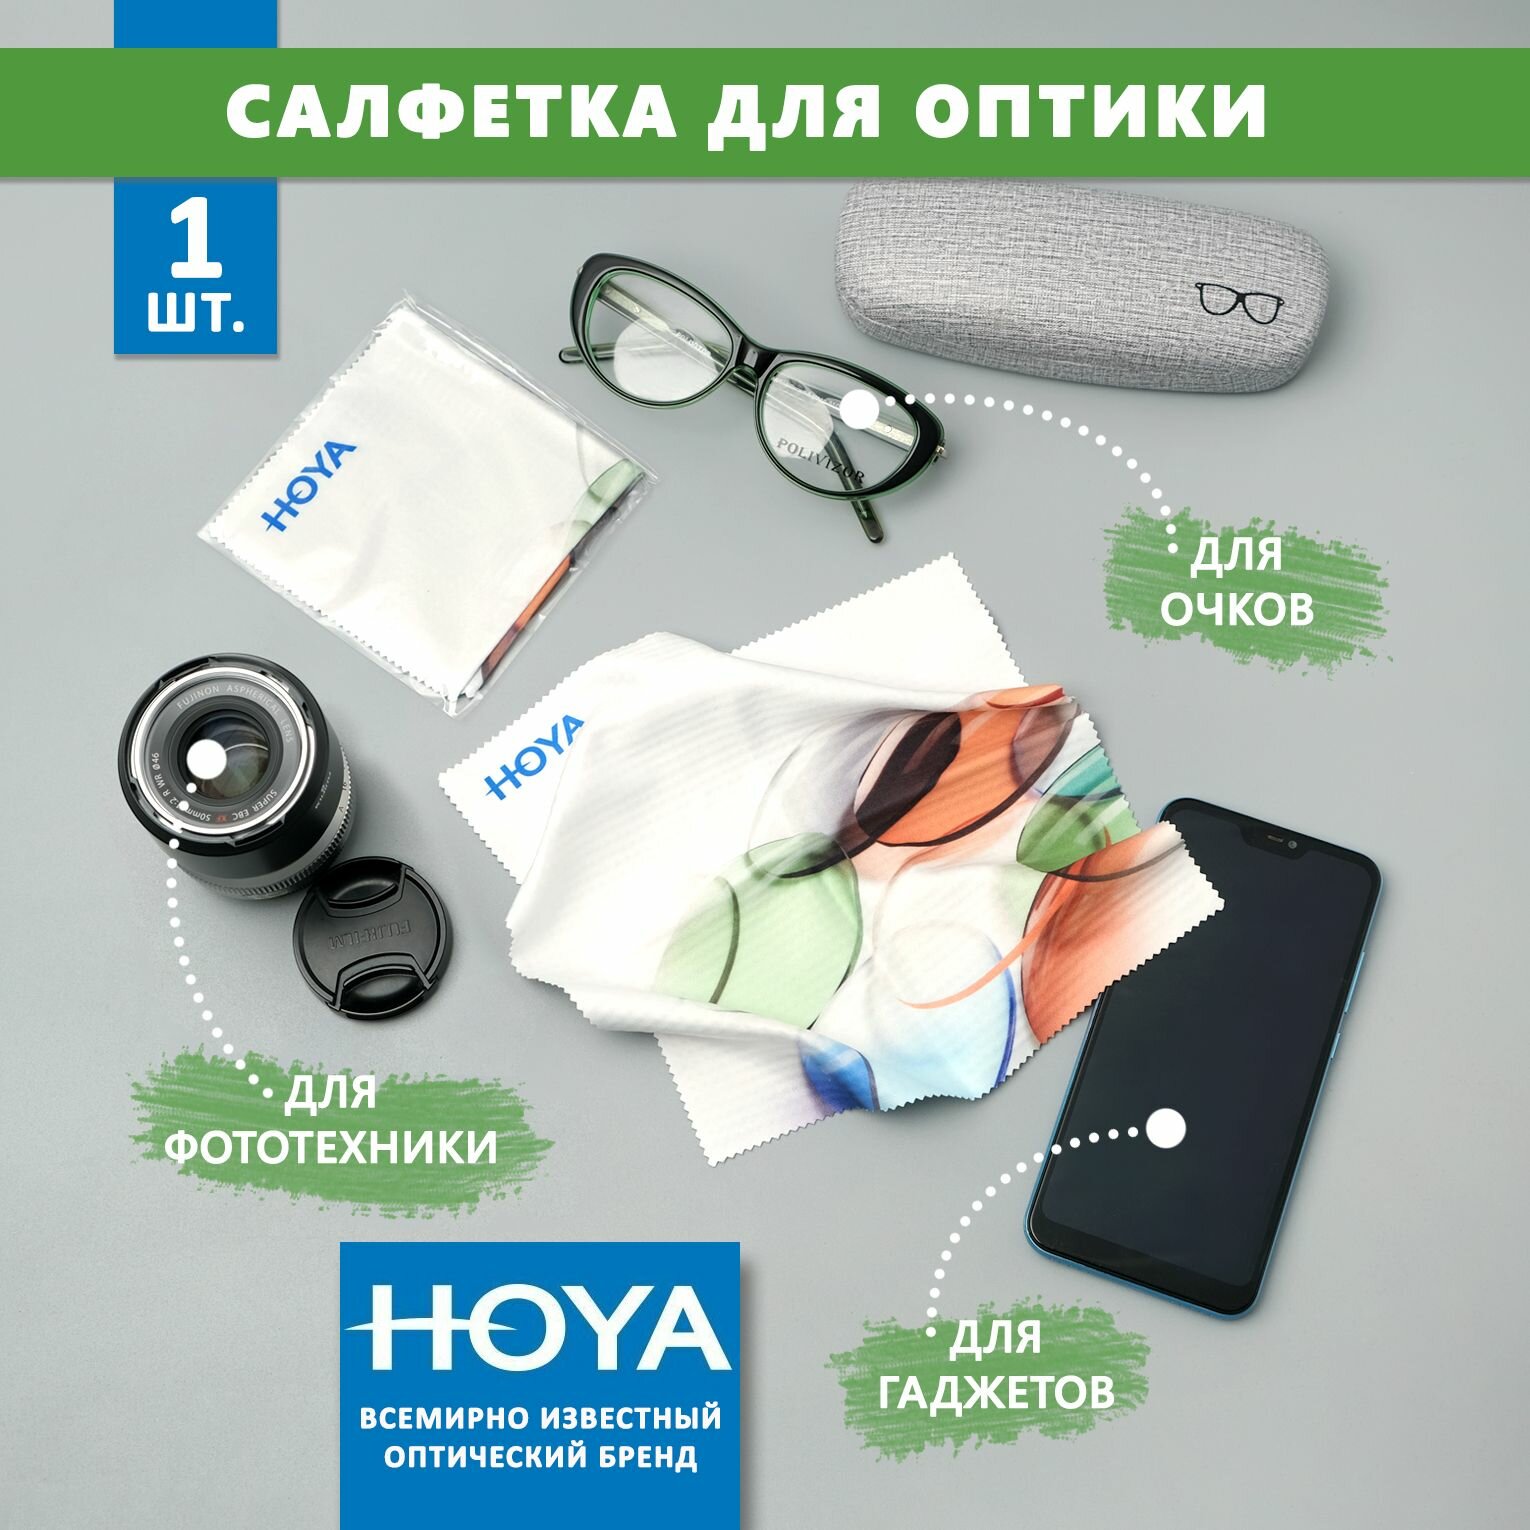 Большая фирменная салфетка Hoya для протирки очков уходом за сотовыми телефонами электронными гаджетами и объективами фотоаппаратов.